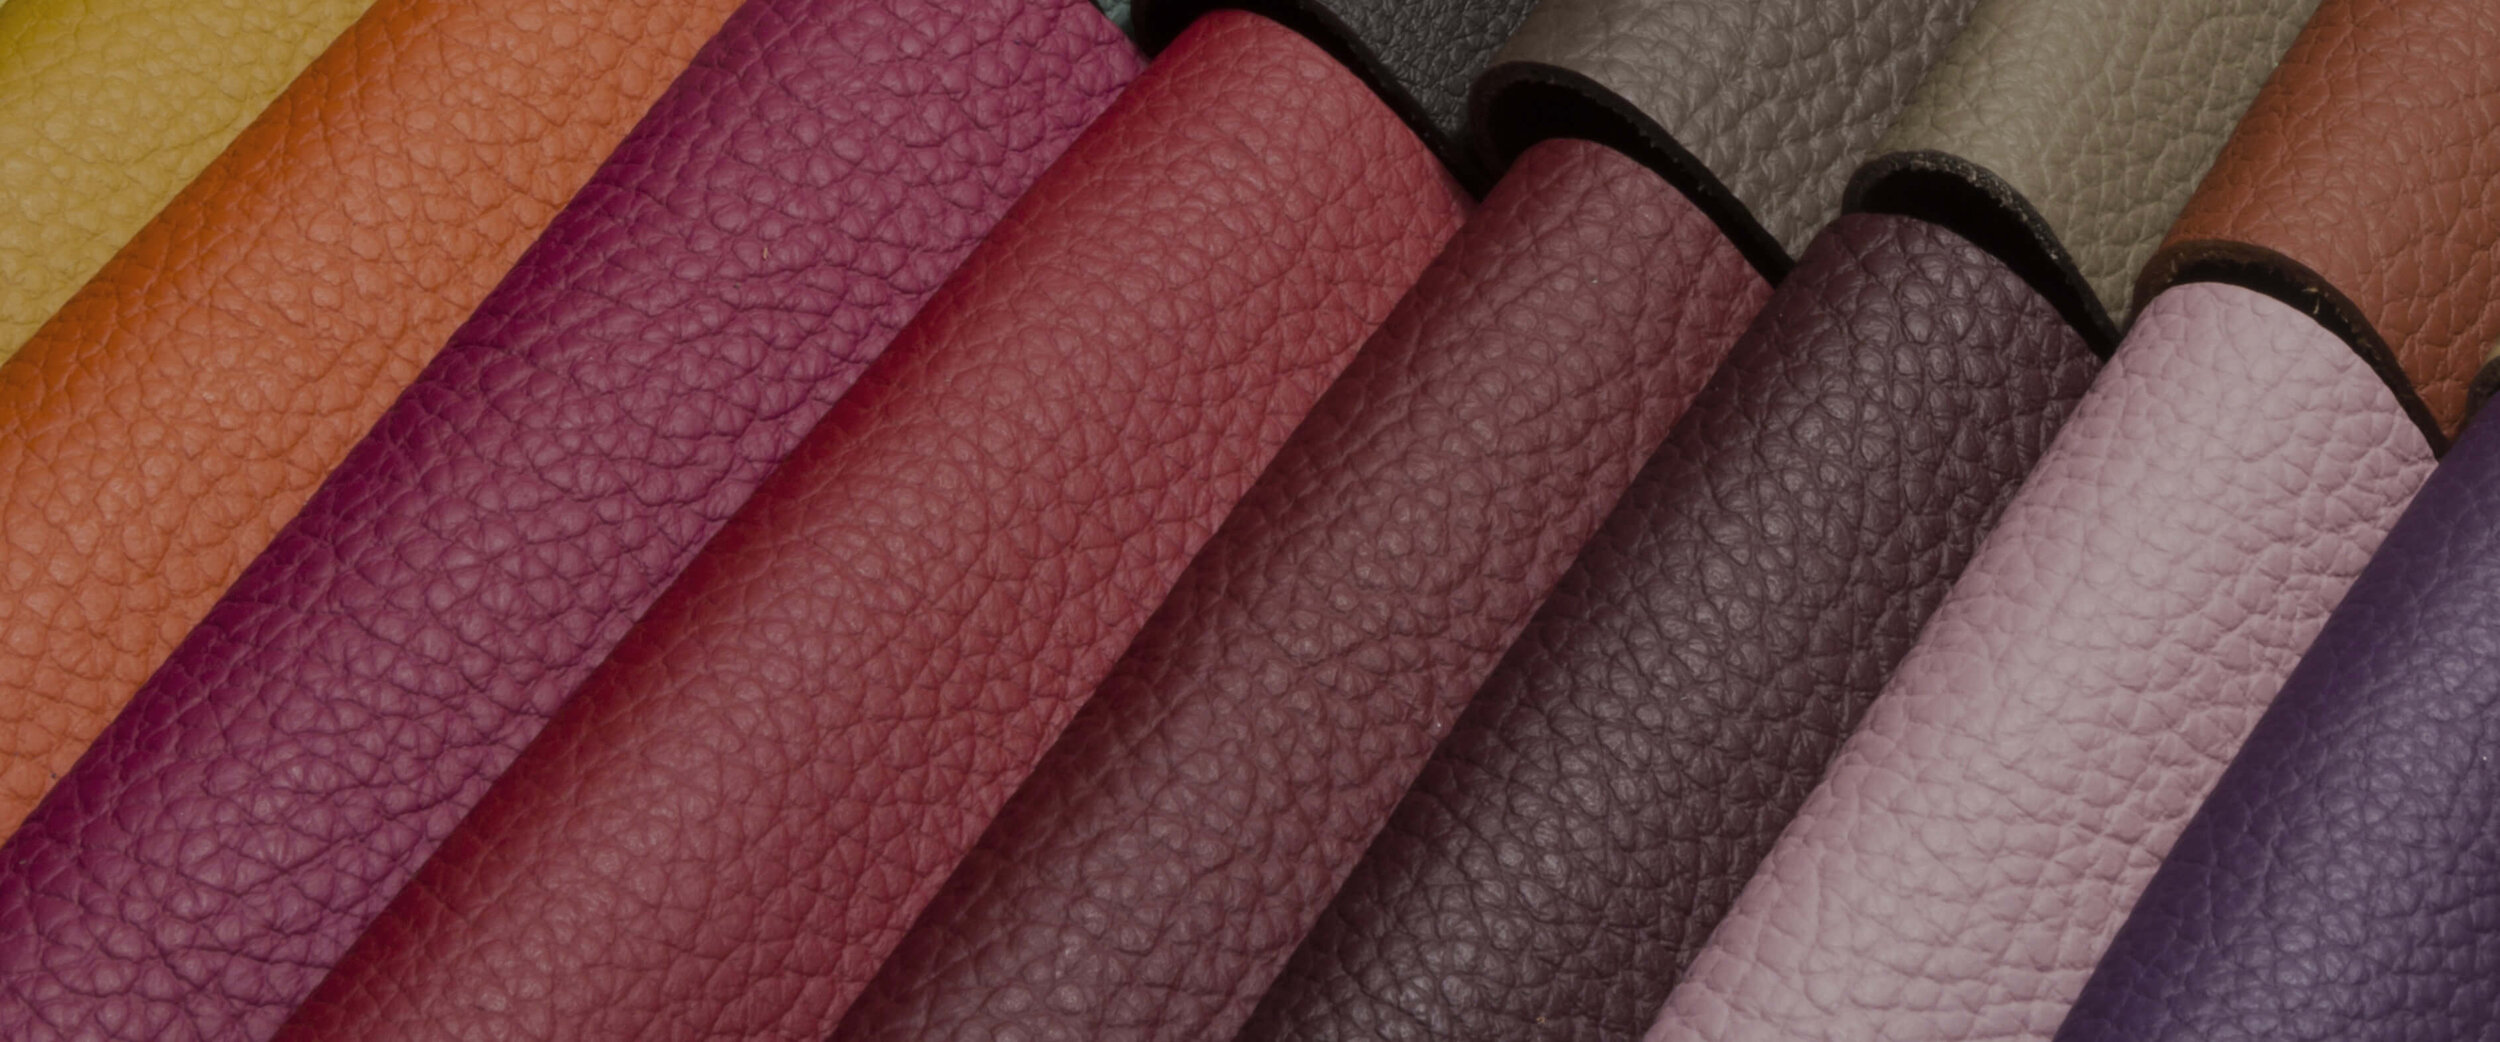 Vegea® Grape Leather – Alternative Leathers Co.